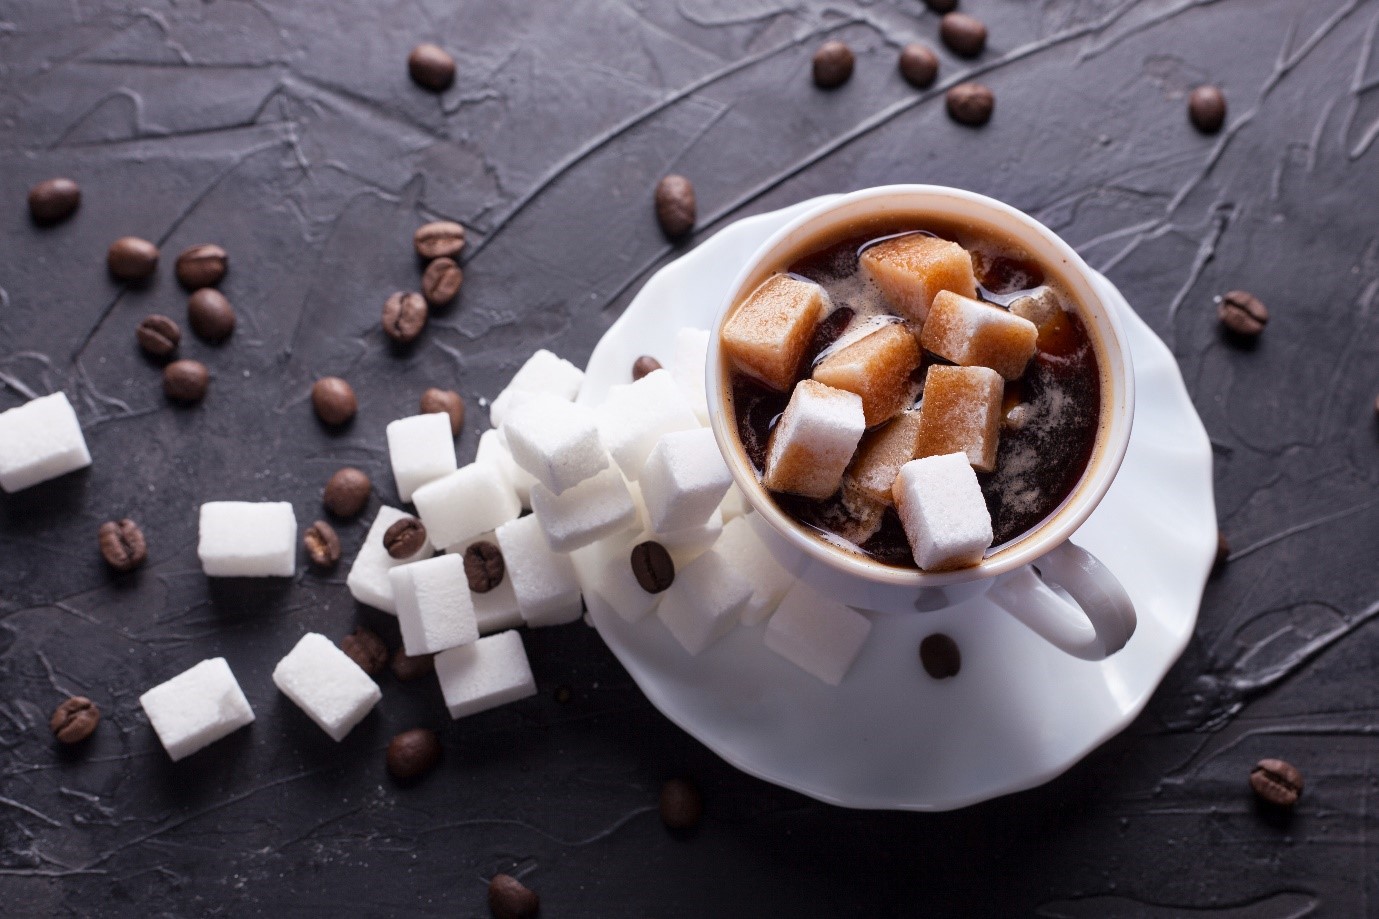 Thức uống thêm đường, kem, sữa làm mất đi những lợi ích cho sức khoẻ của một ly cà phê đen cơ bản